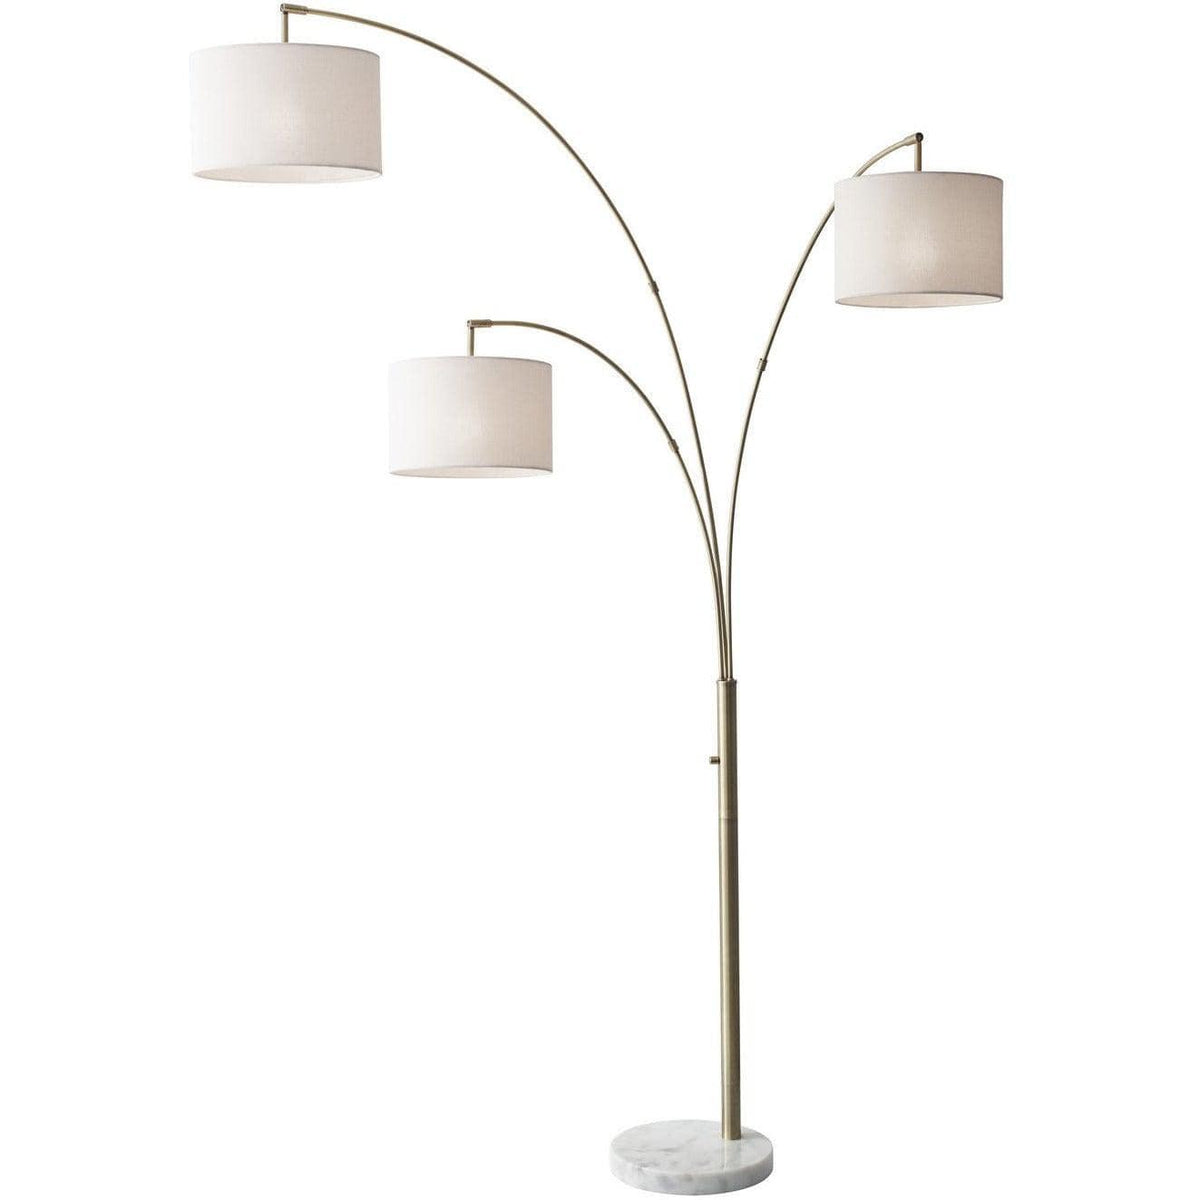 Arlo Tree Lamp – Arevco Lighting Ottawa